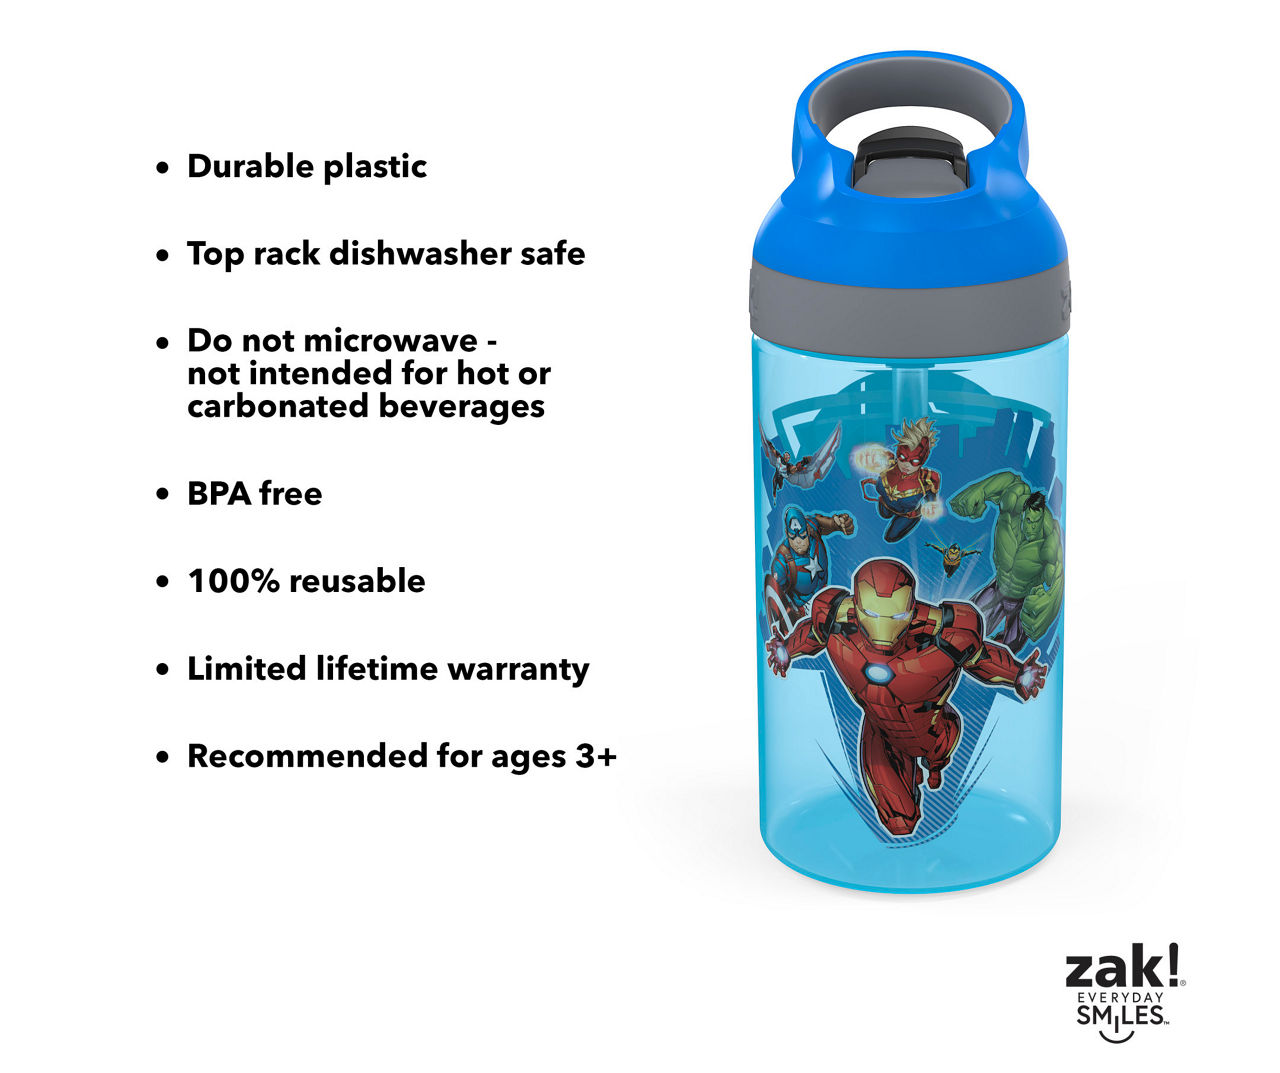 Marvel Dishwasher Safe Water Bottles